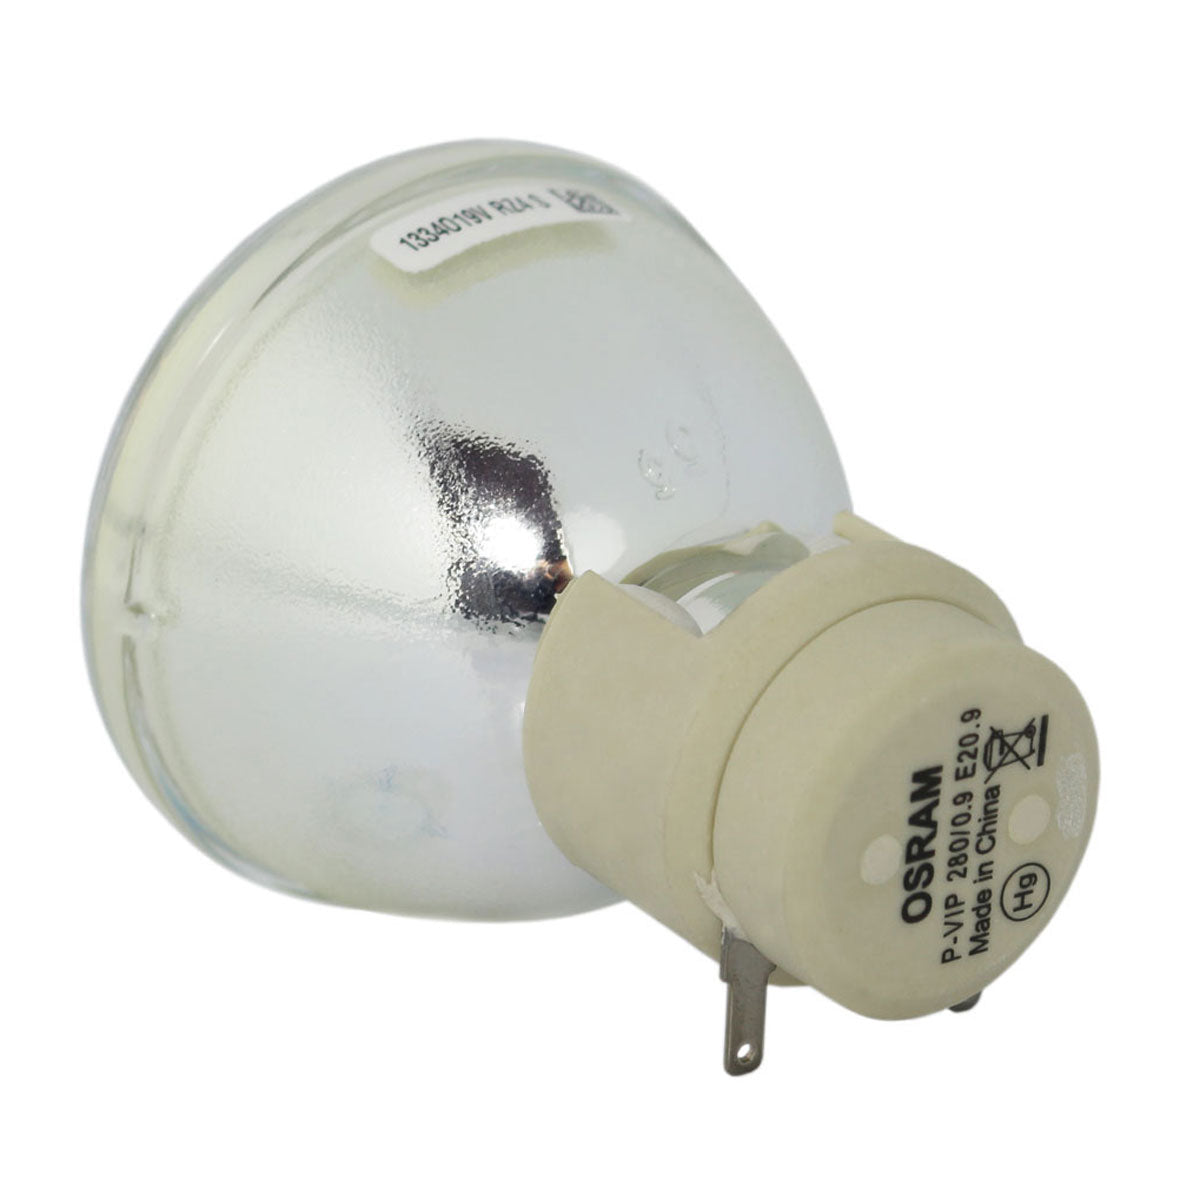 Vivitek 5811118924-SVV Osram Projector Bare Lamp